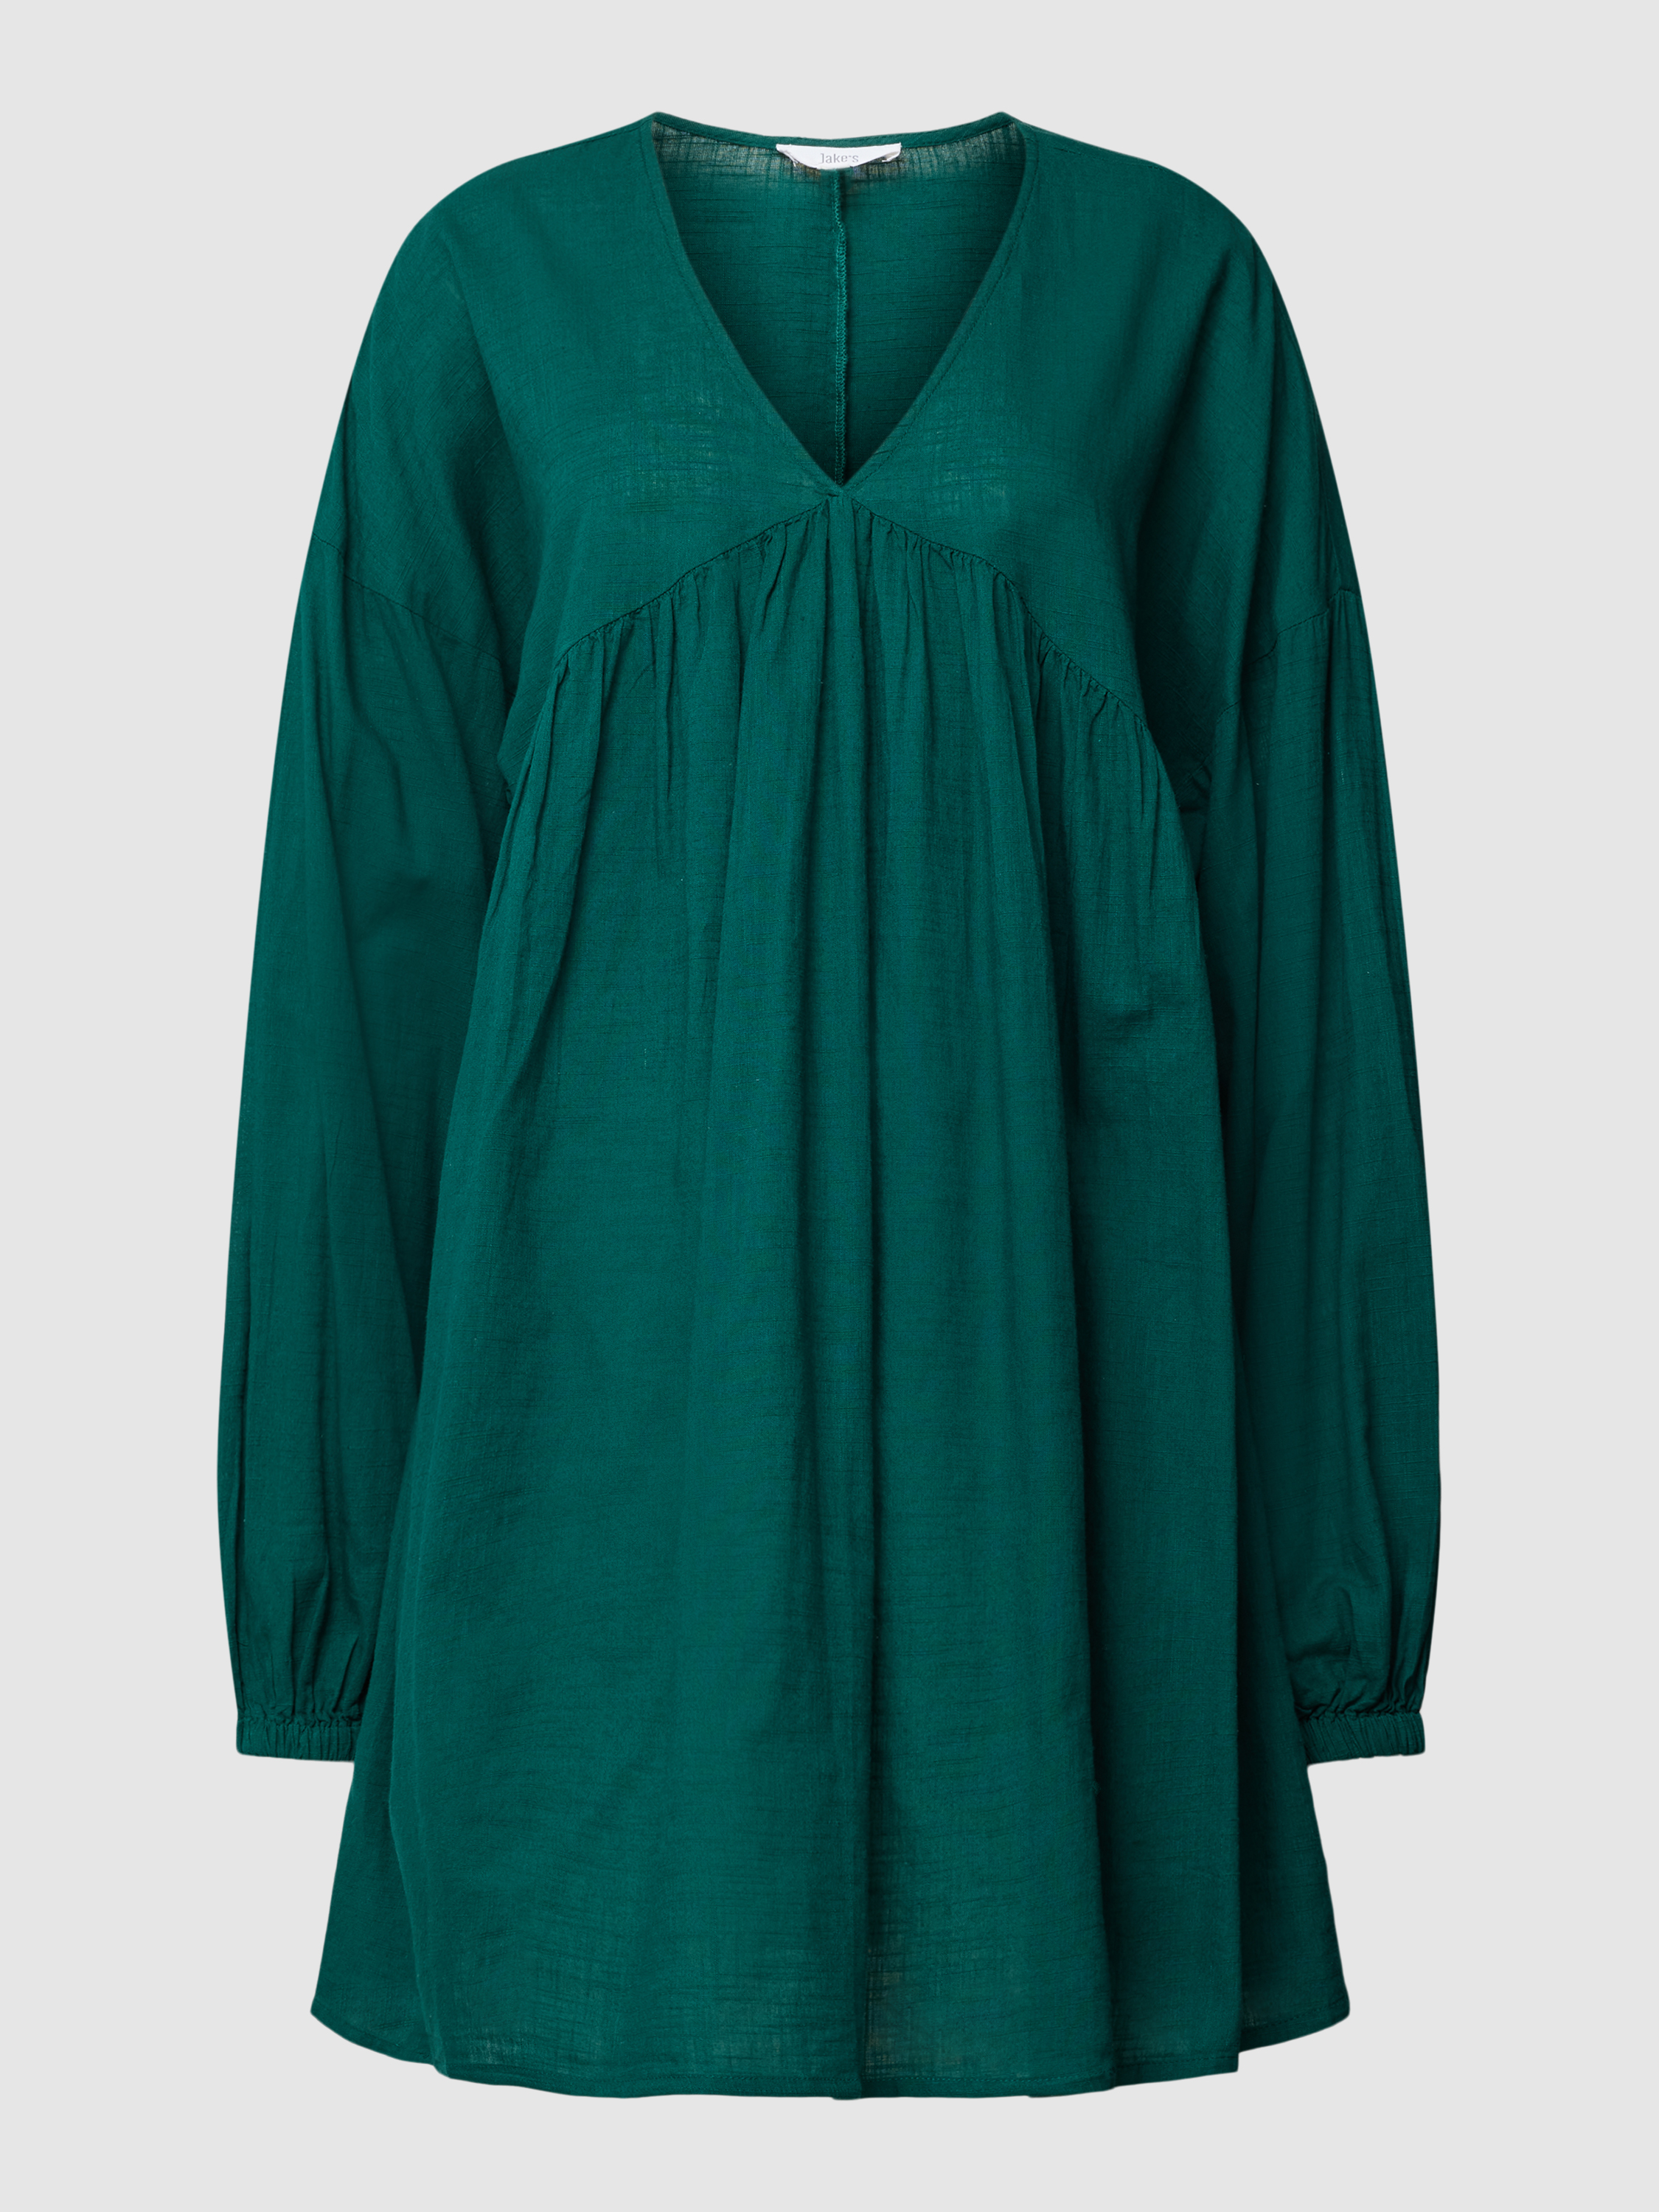 Платье женское Jake's Casual 1819332 зеленое 34 (доставка из-за рубежа)